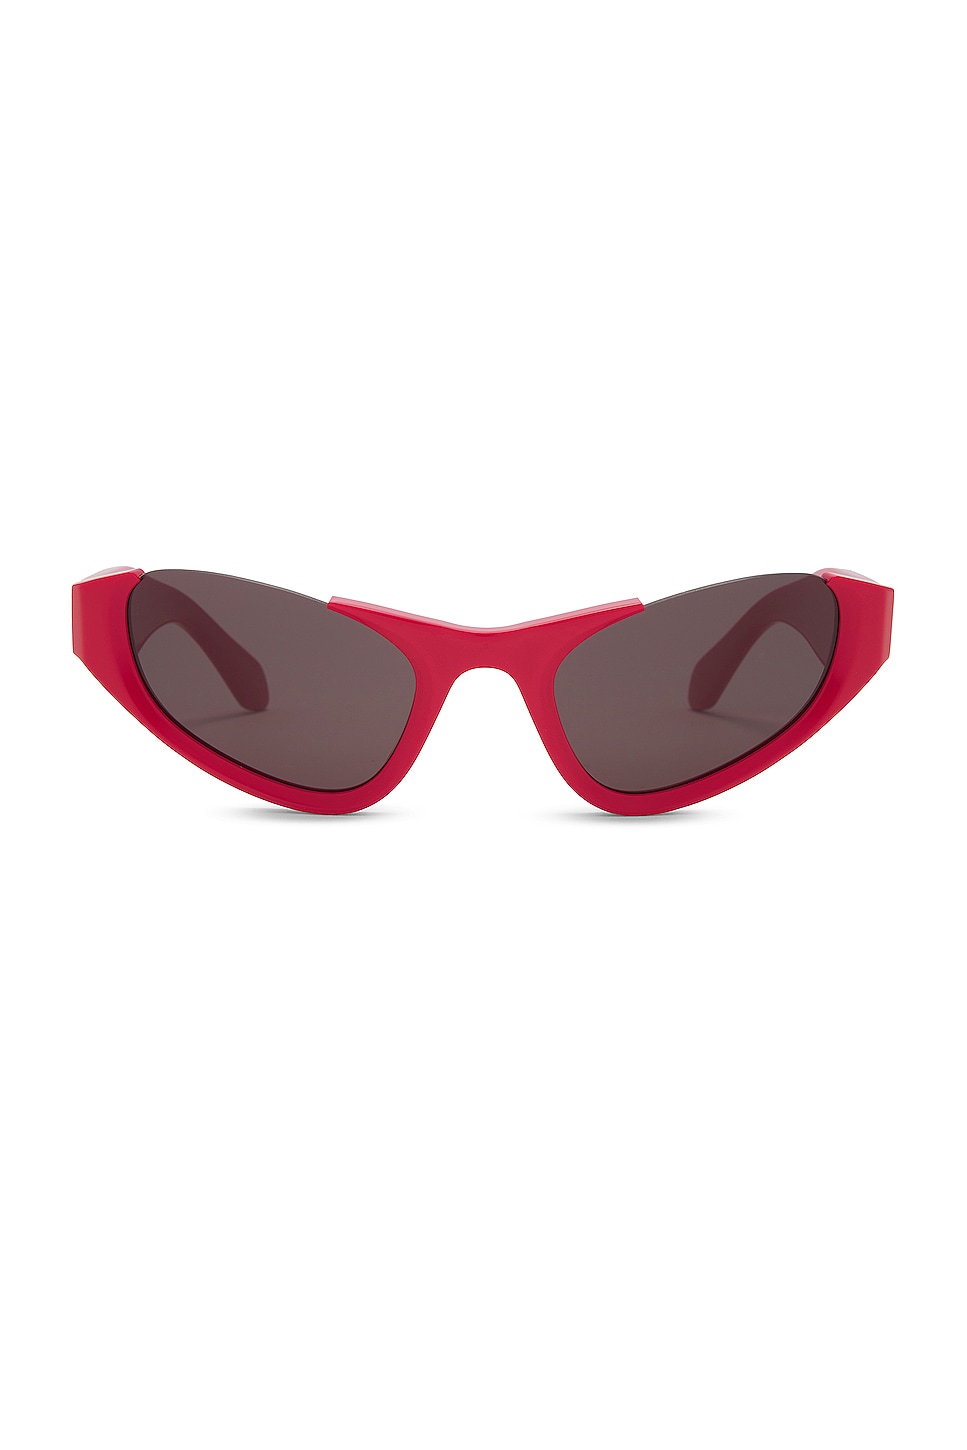 ALAÏA Lettering Logo Cat Eye Sunglasses in Red